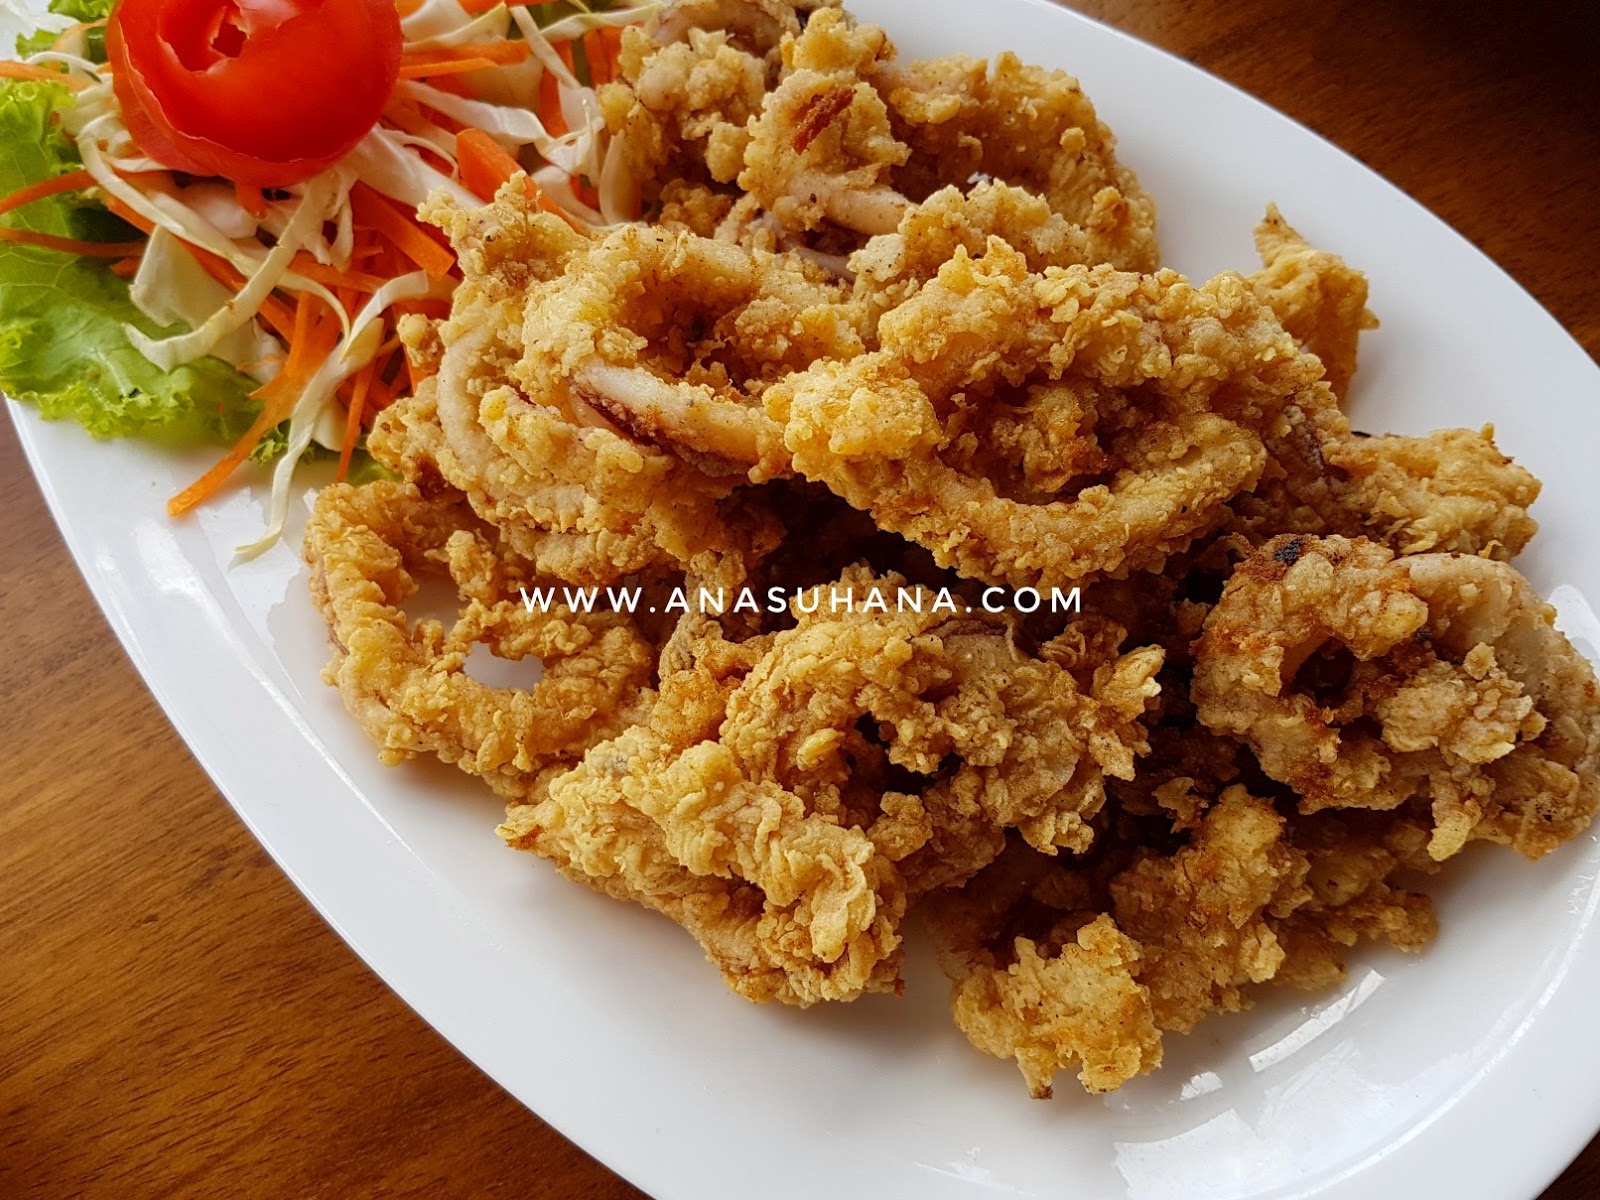 Mini Reunion Dengan Seafood Lambak di An-Nur's Kitchen Ayer8 Putrajaya 